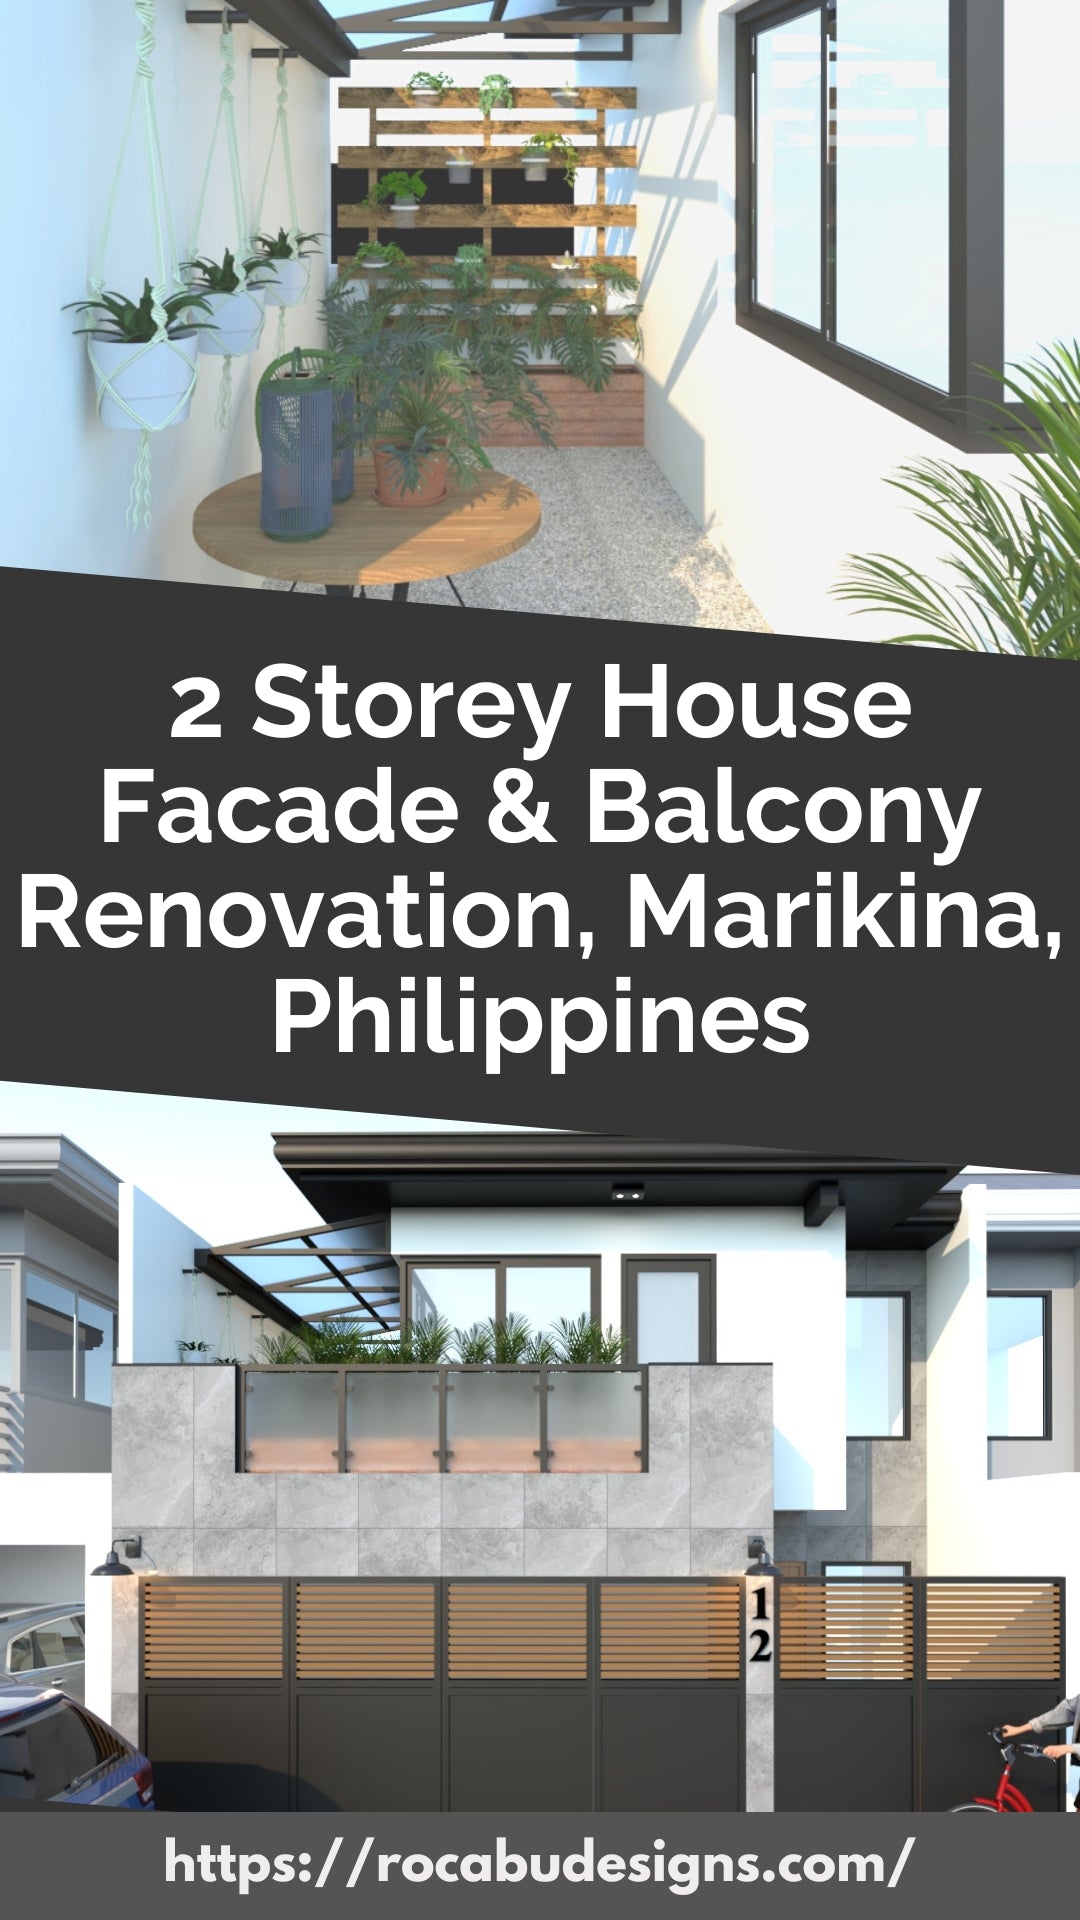 2 Storey facade and balcony renovation, marikina, philippines